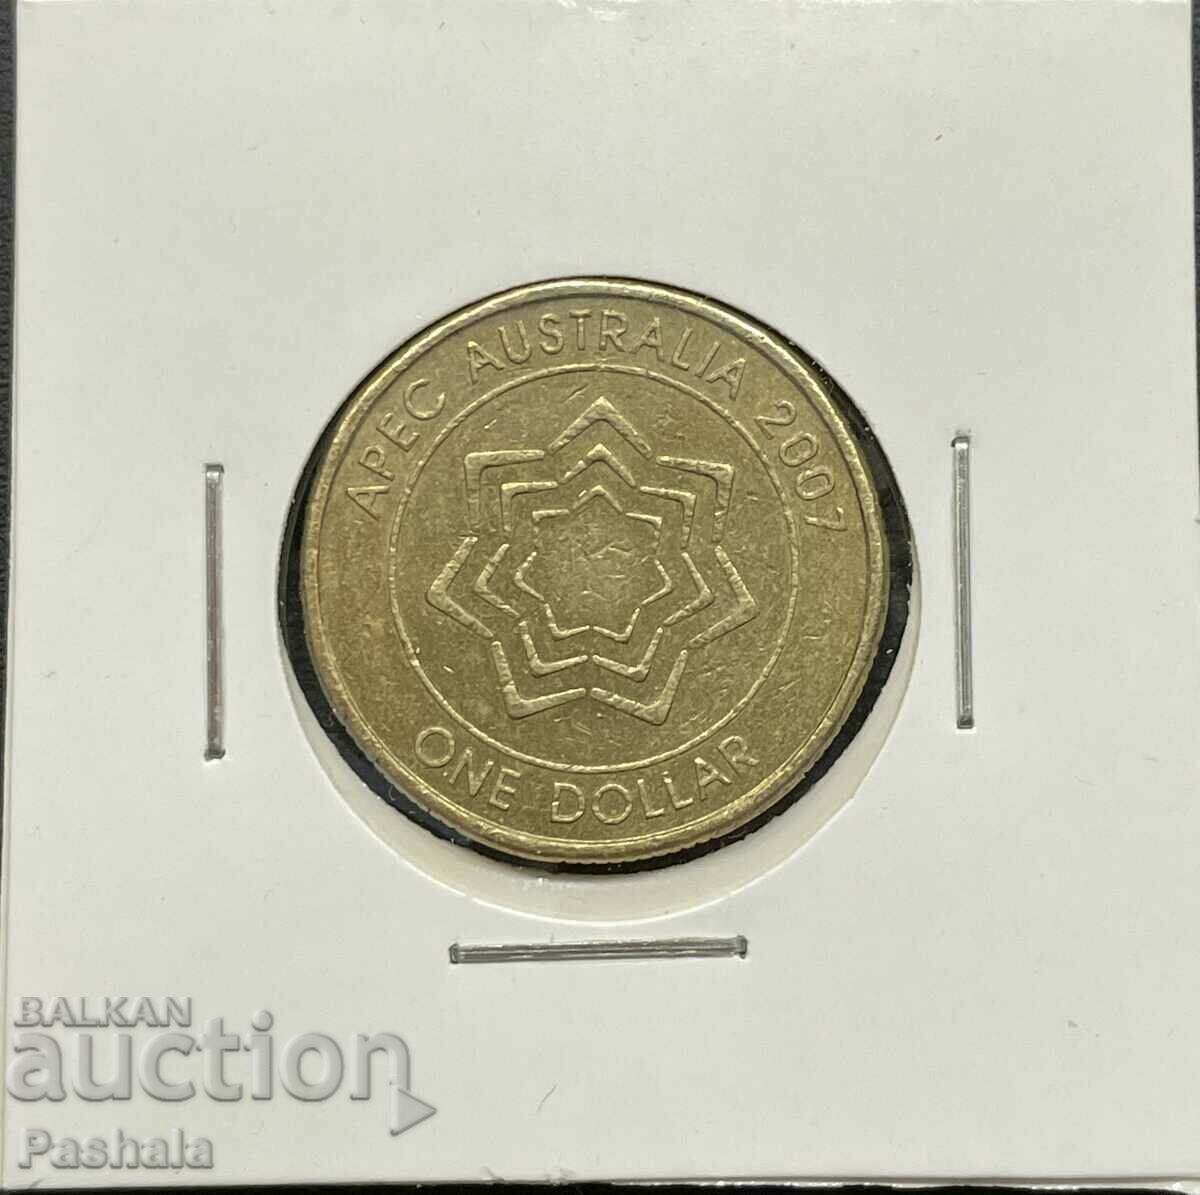 Αυστραλία $1 2007